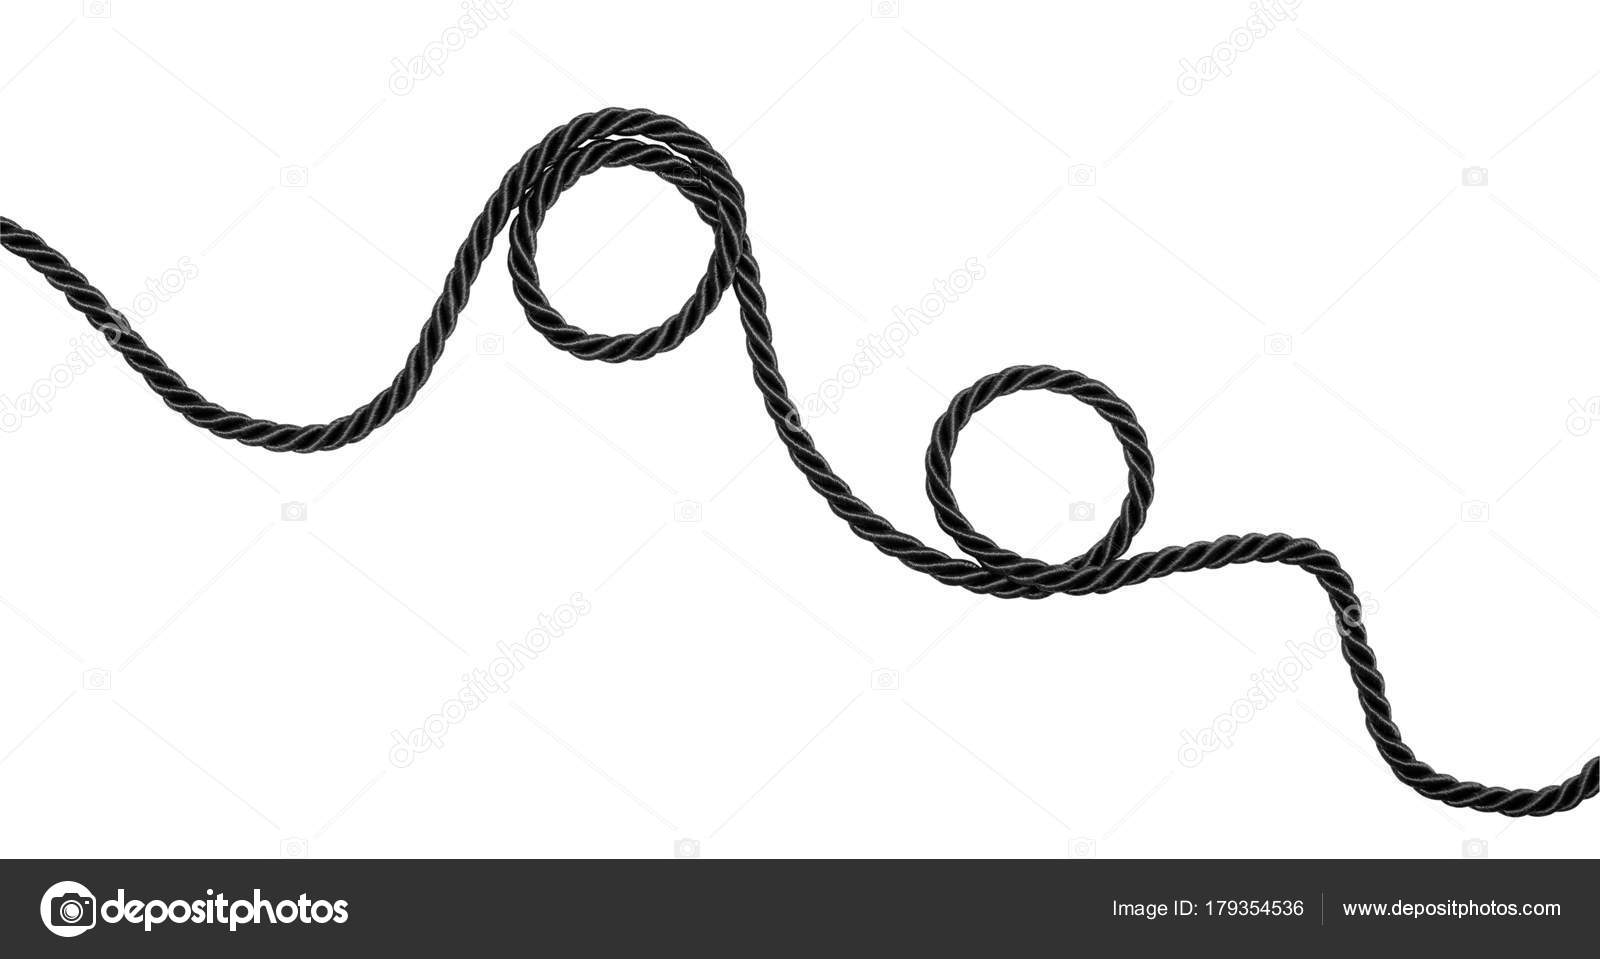 Cuerda negra brillante . Ilustración de stock de ©salamiss #179354536